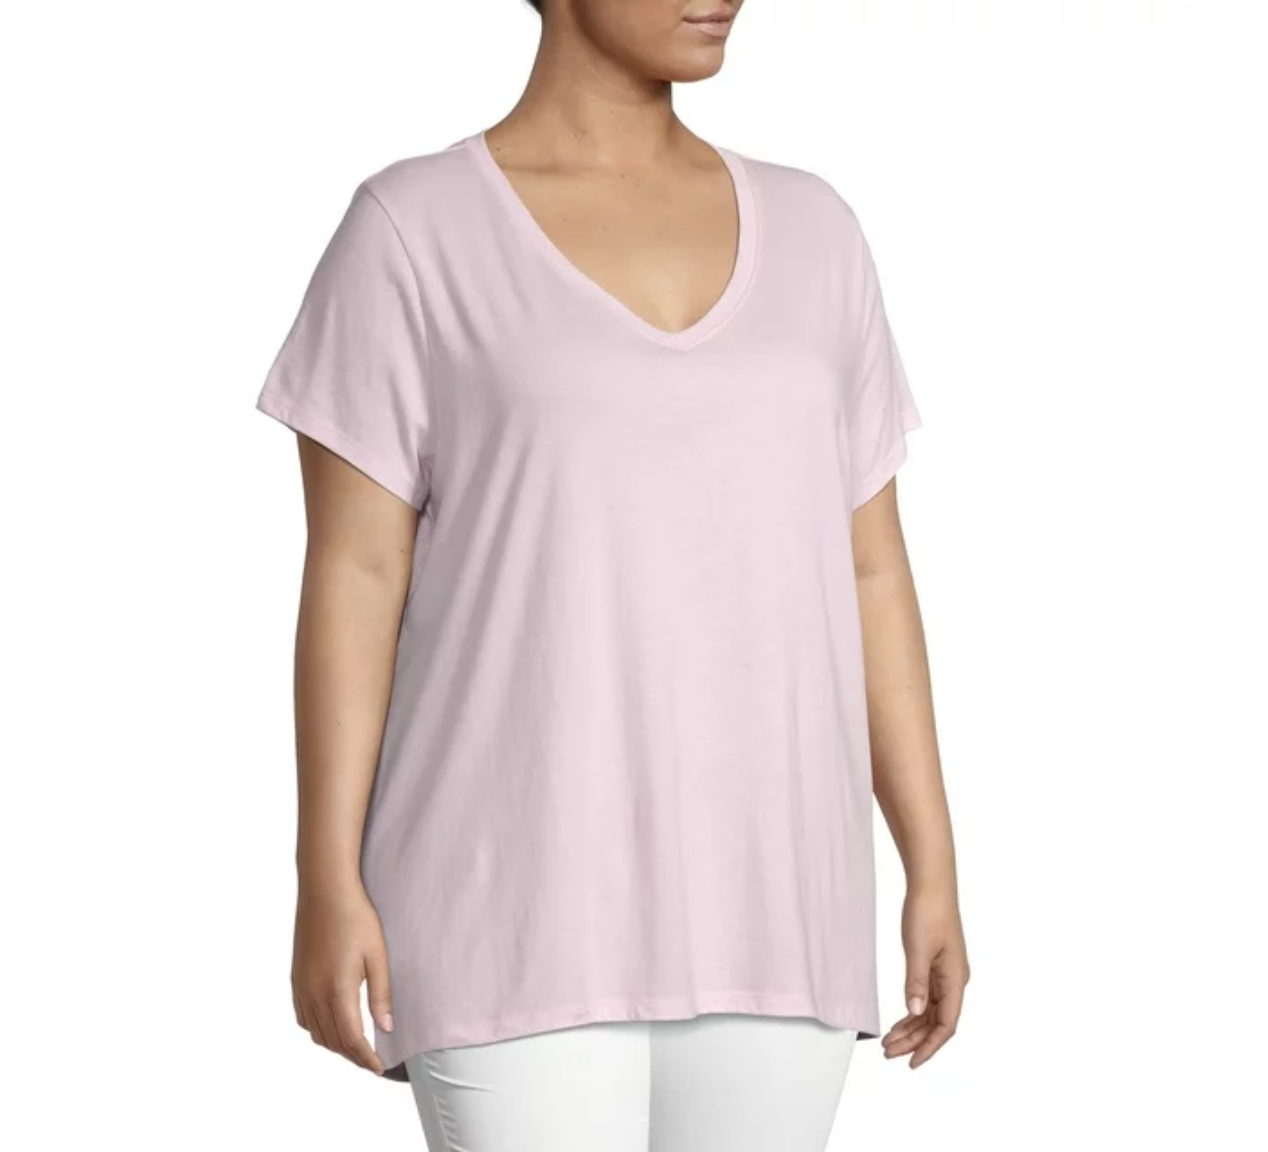 A light pink V-neck T-shirt